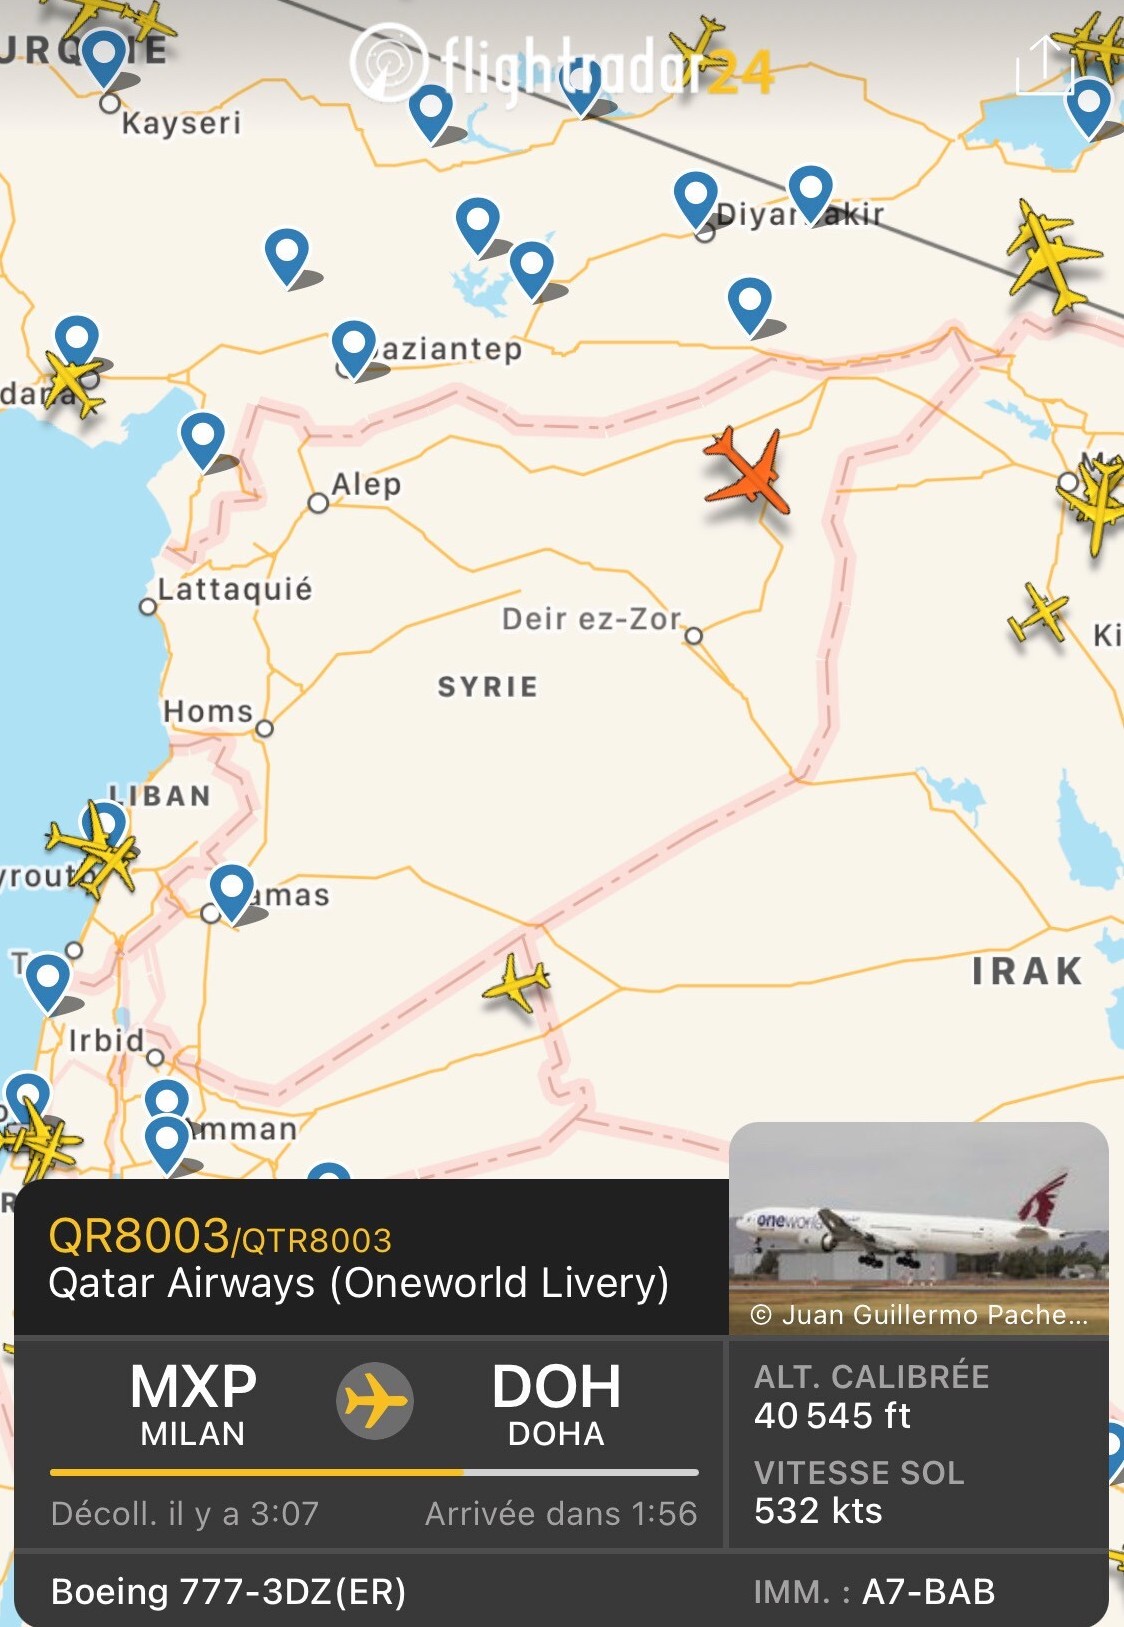 عبور إحدى طائرات الخطوط الجوية القطرية، في 18 كانون الثاني (يناير) الجاري، في الأجواء السورية متّجهةً من ميلان الإيطالية باتجاه الدوحة، نقلاً عن Flightradar24\r\n\r\n